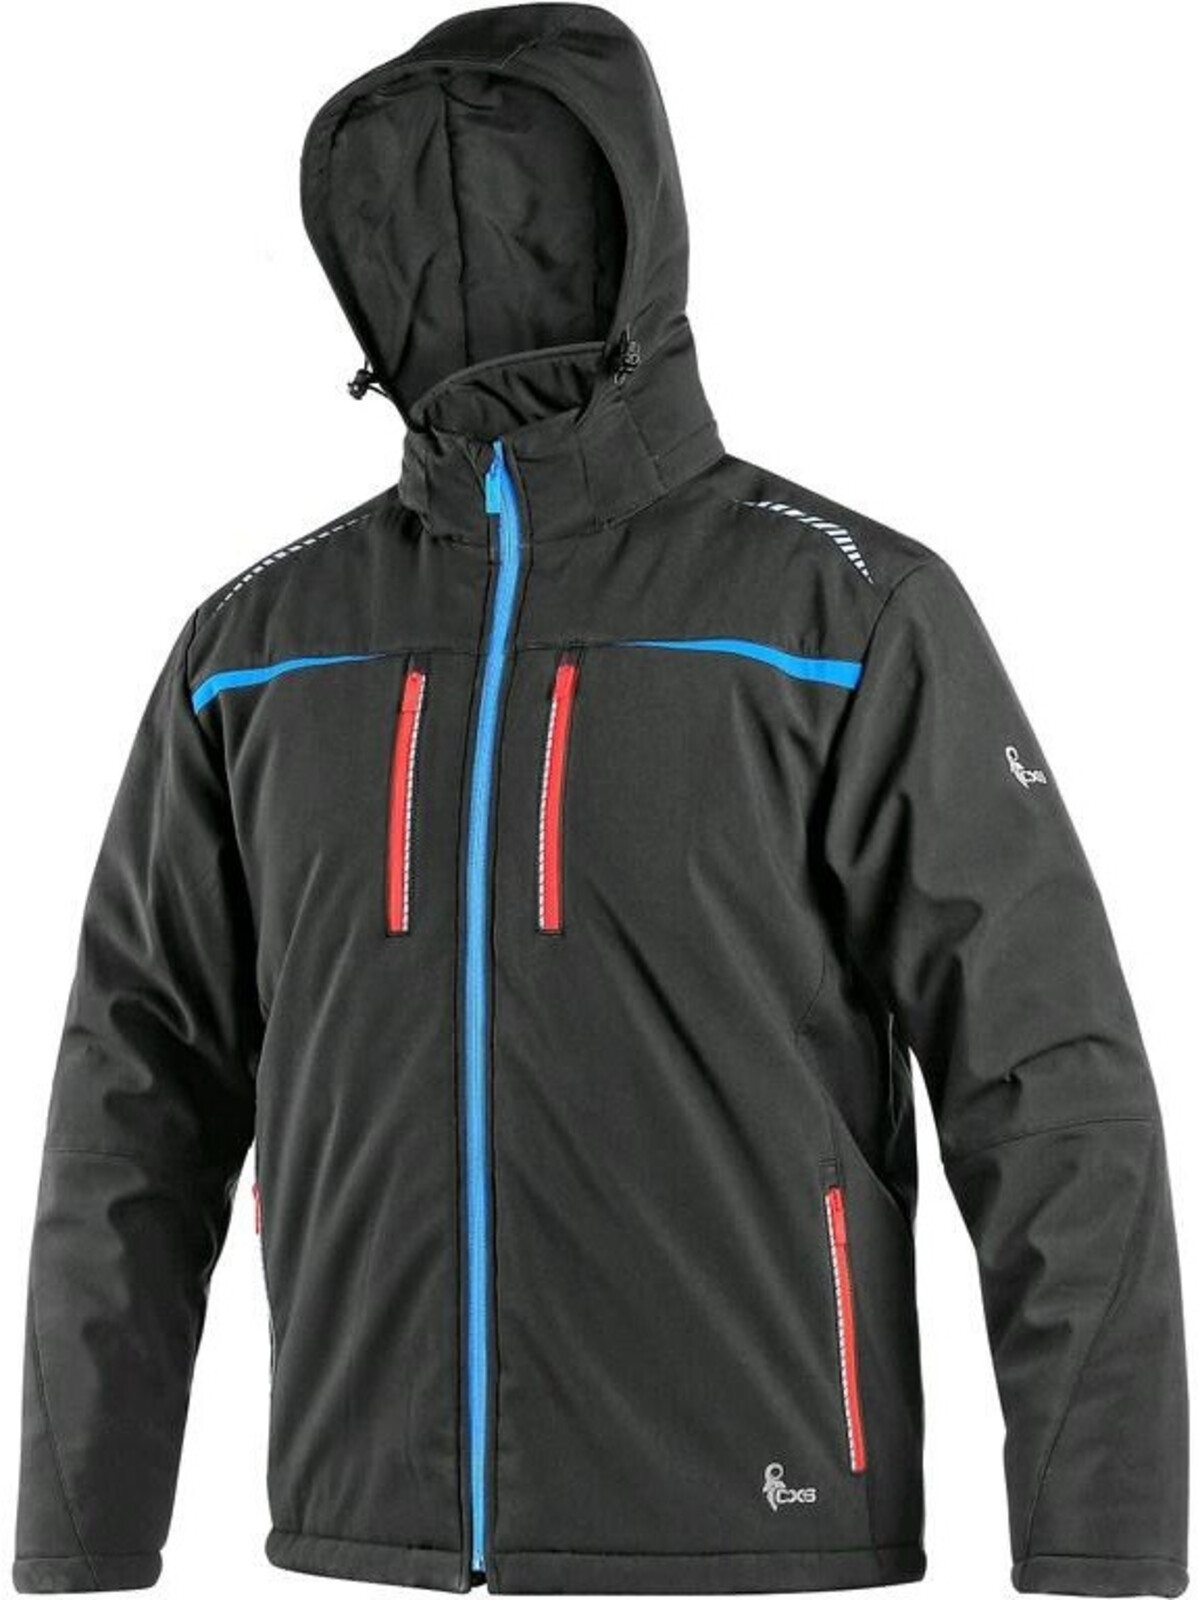 Pánska zateplená softshellová bunda CXS Norfolk - veľkosť: L, farba: čierna/modrá